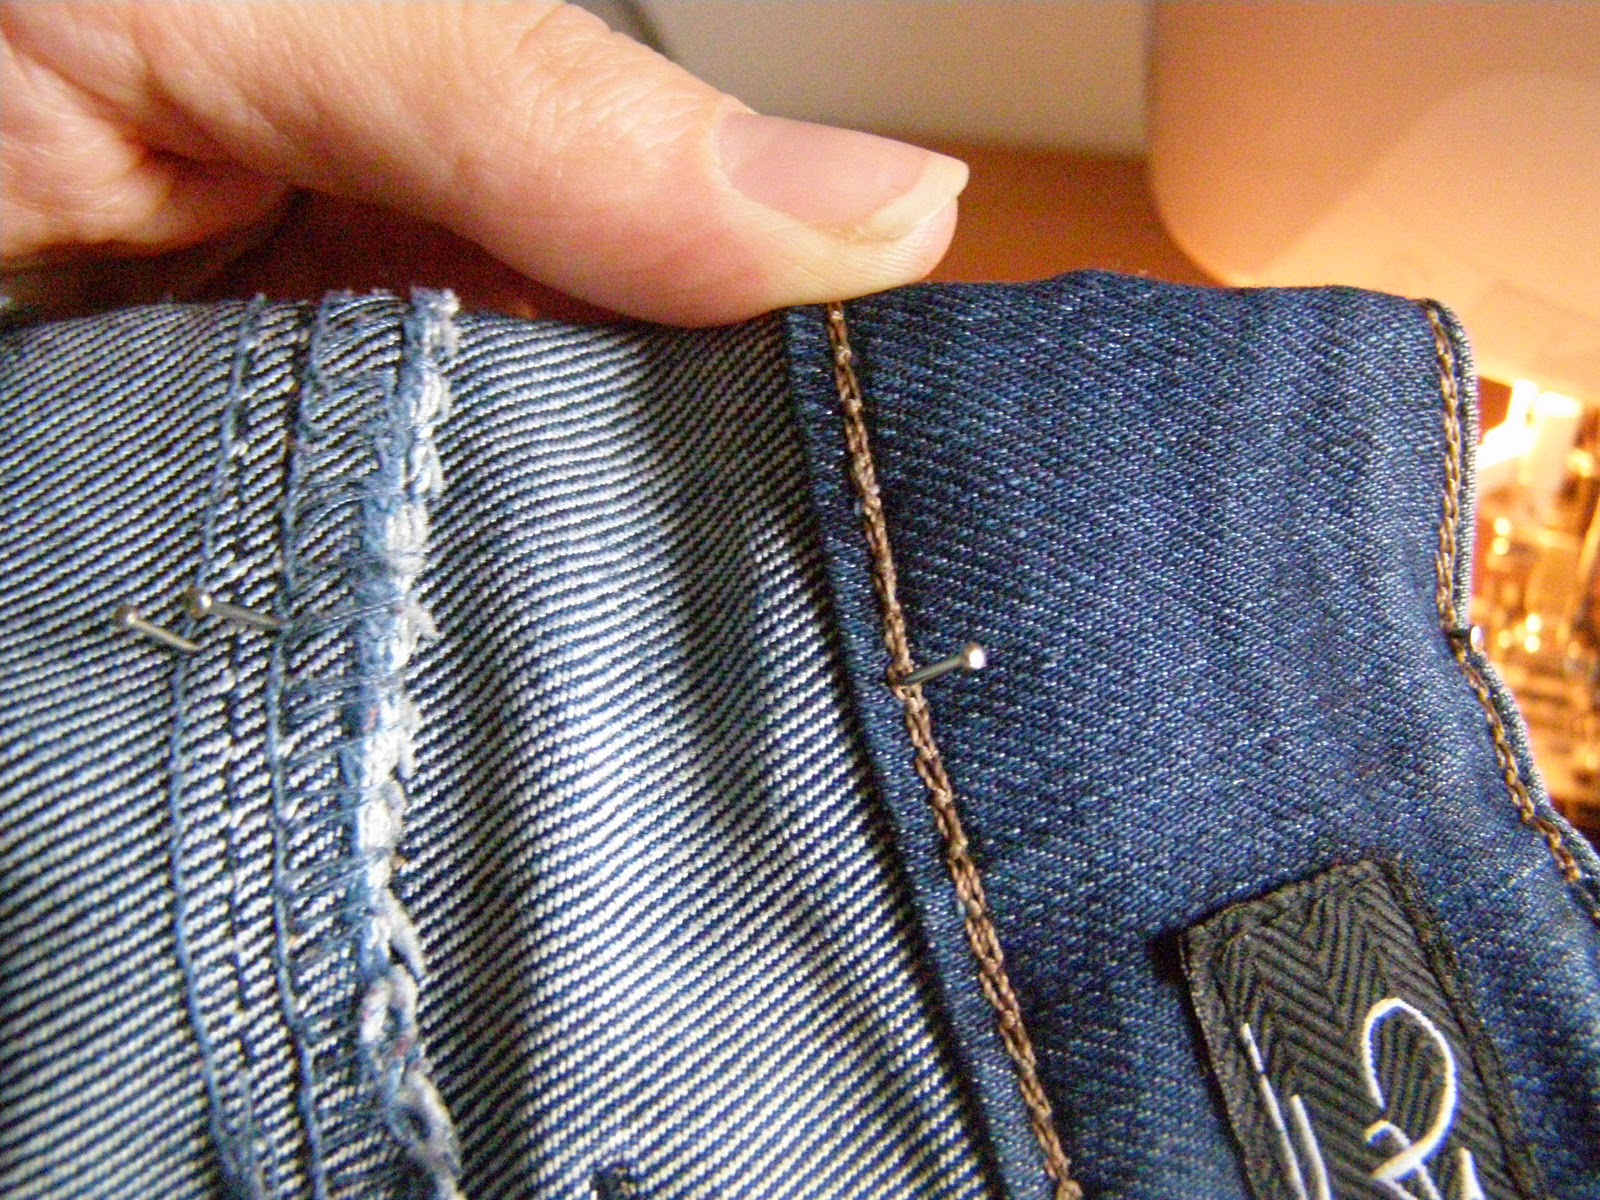 излишки ткани на брюках